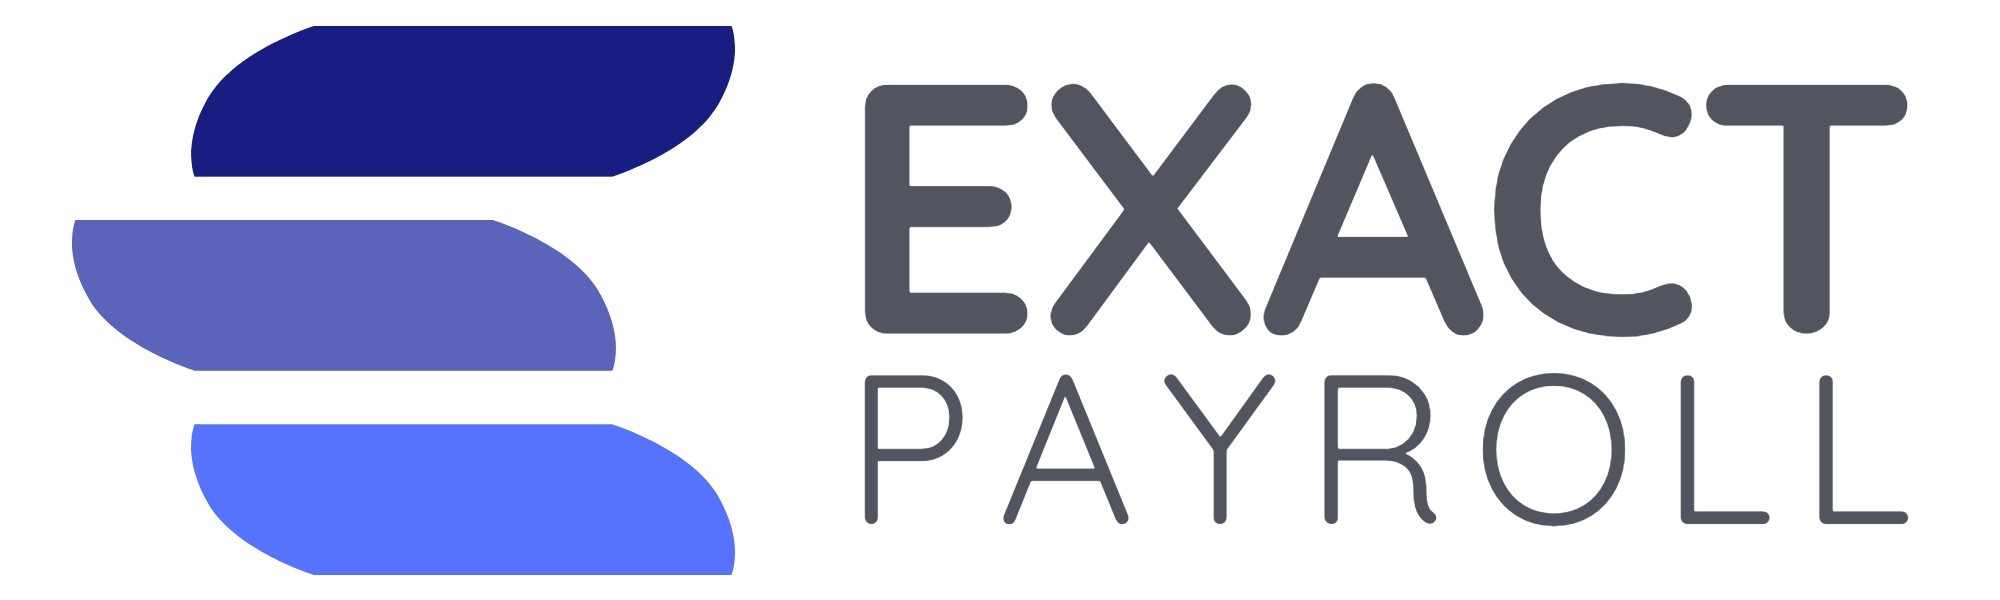 Exact Payroll logo